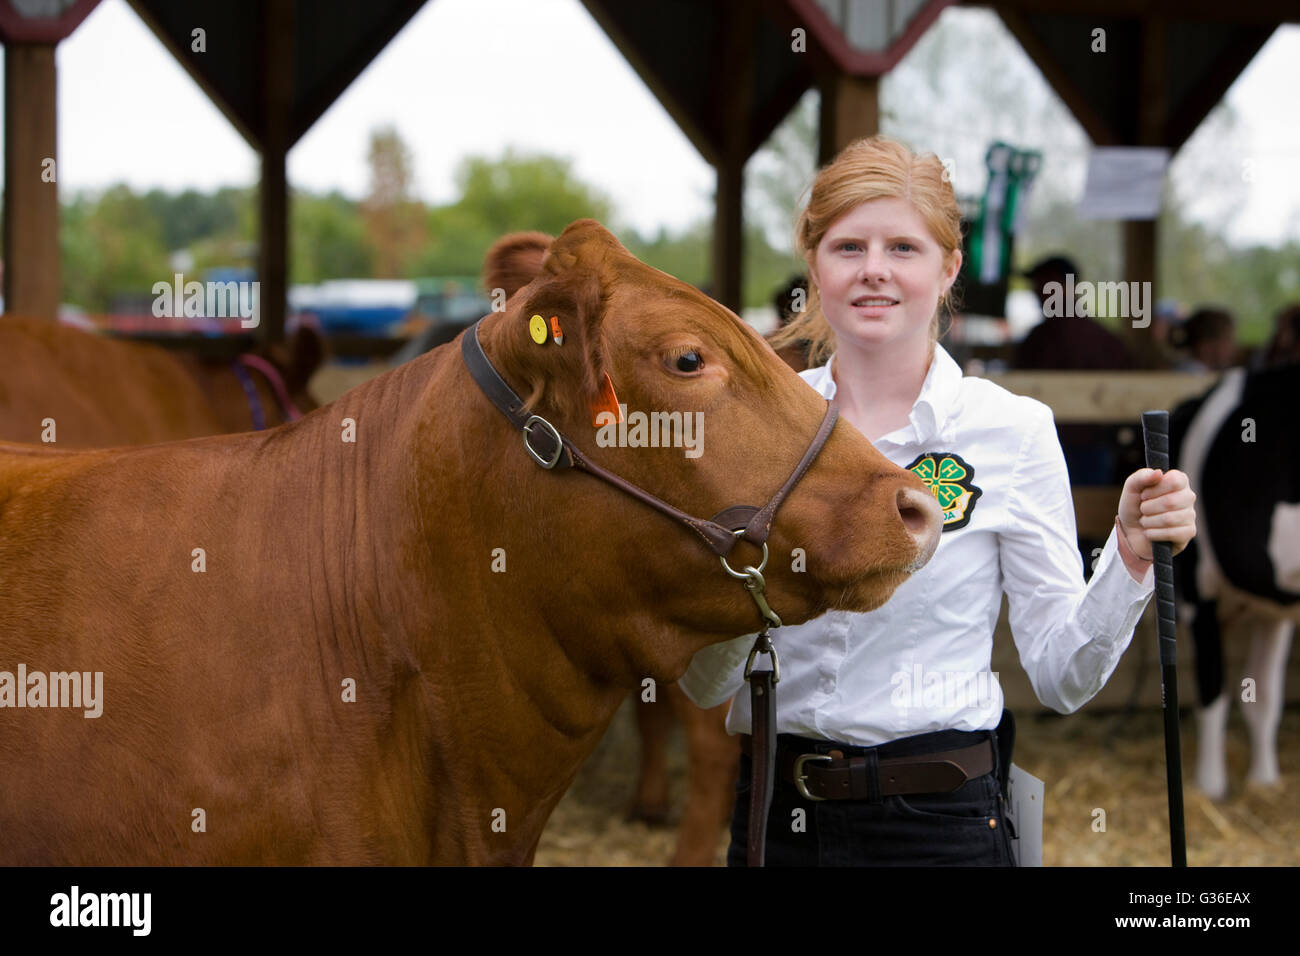 América del Norte Canadá Ontario adolescente mostrando vaca en feria agropecuaria Foto de stock